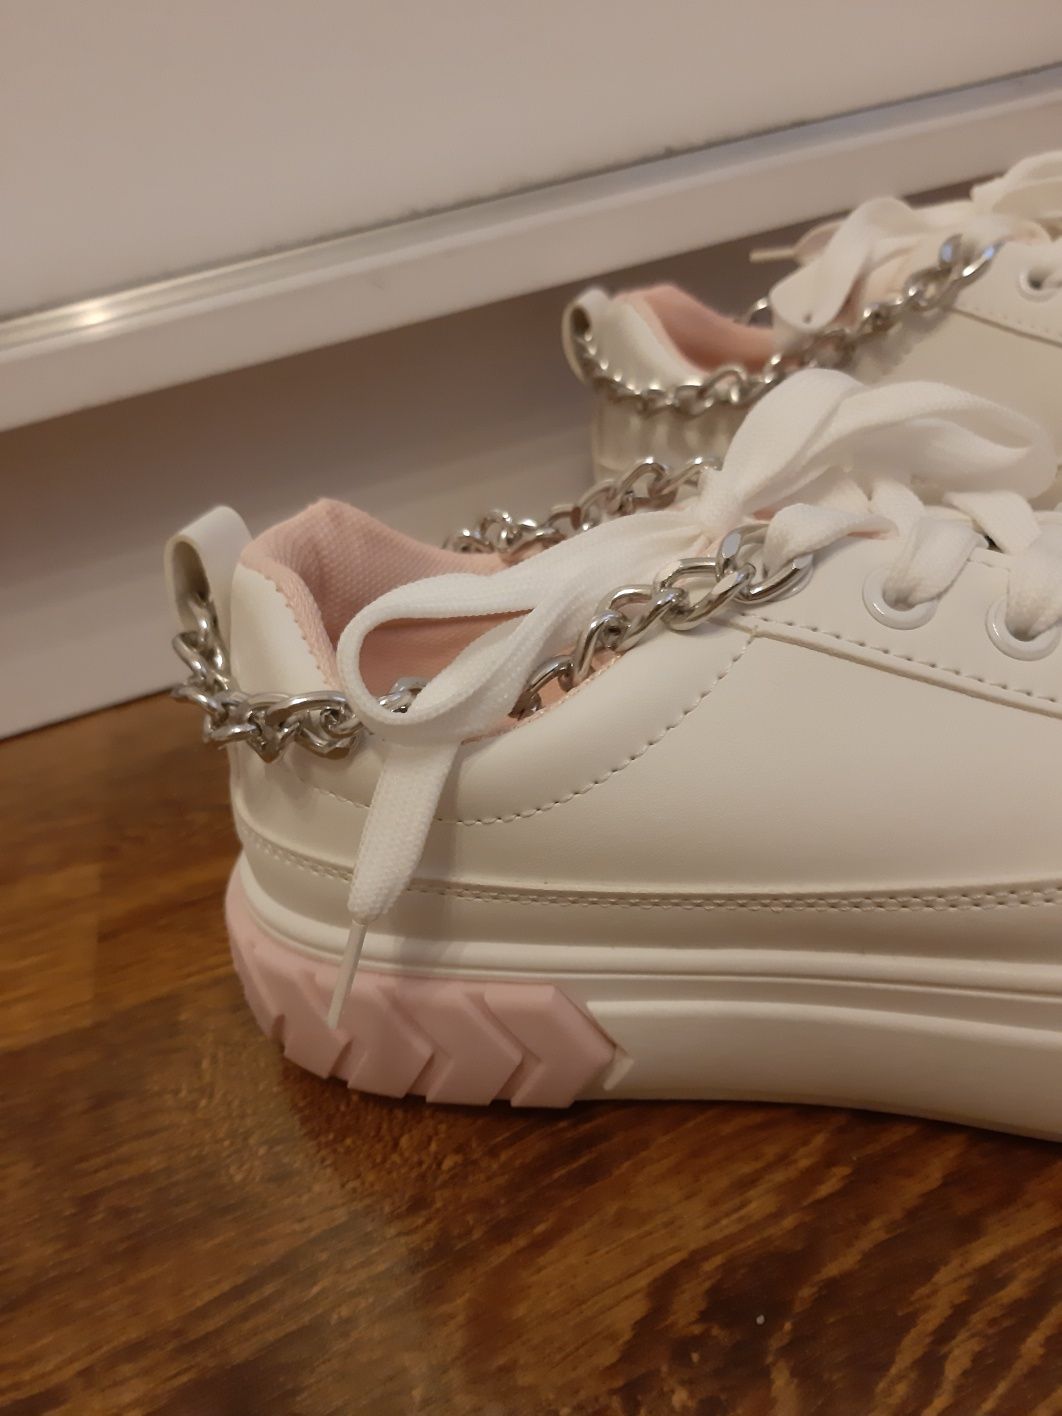 Białe damskie buty sneakersy z łańcuszkami
Rozmiar 39
Łańcuszki odpina